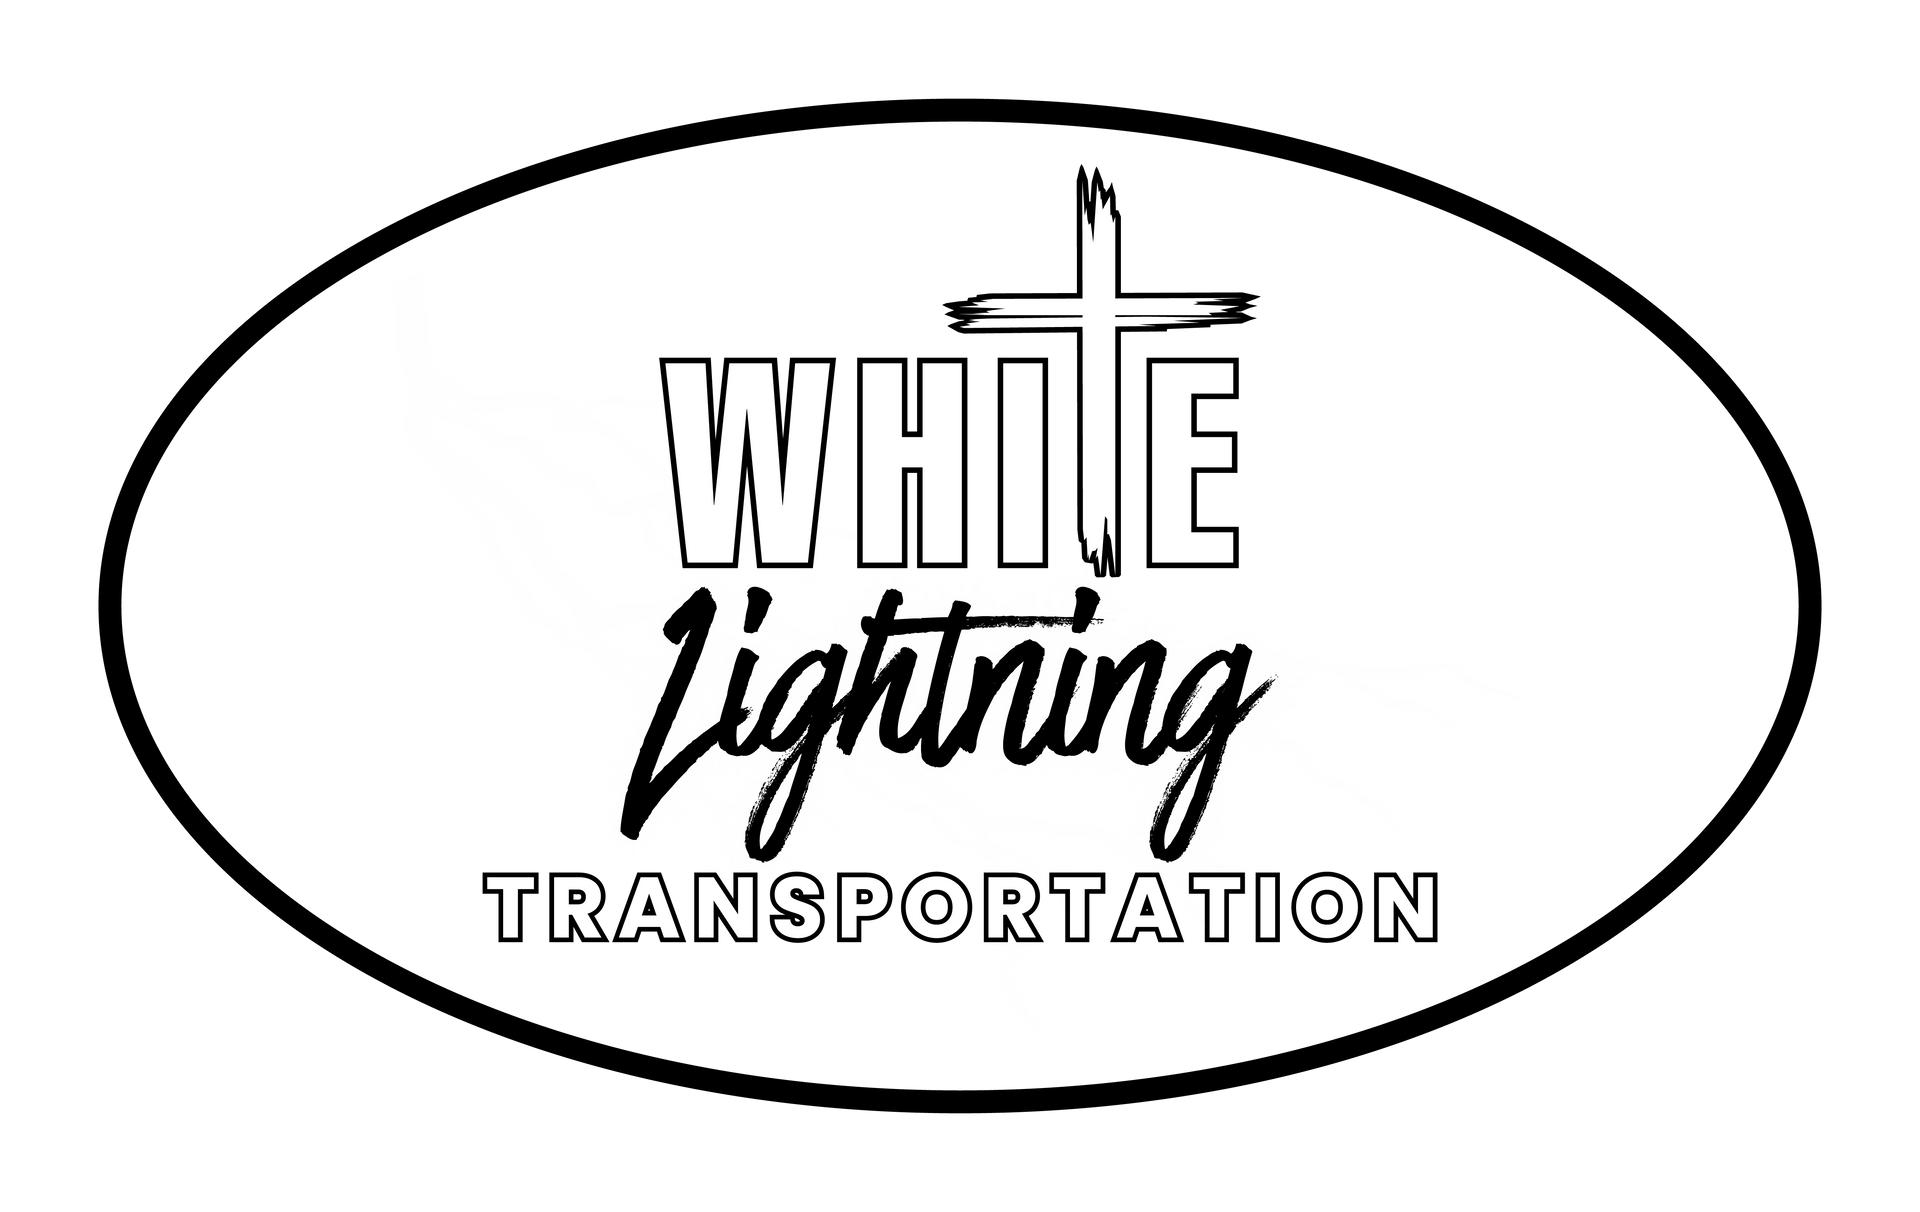 WHITE LIGHTNING TRANSPORTATION